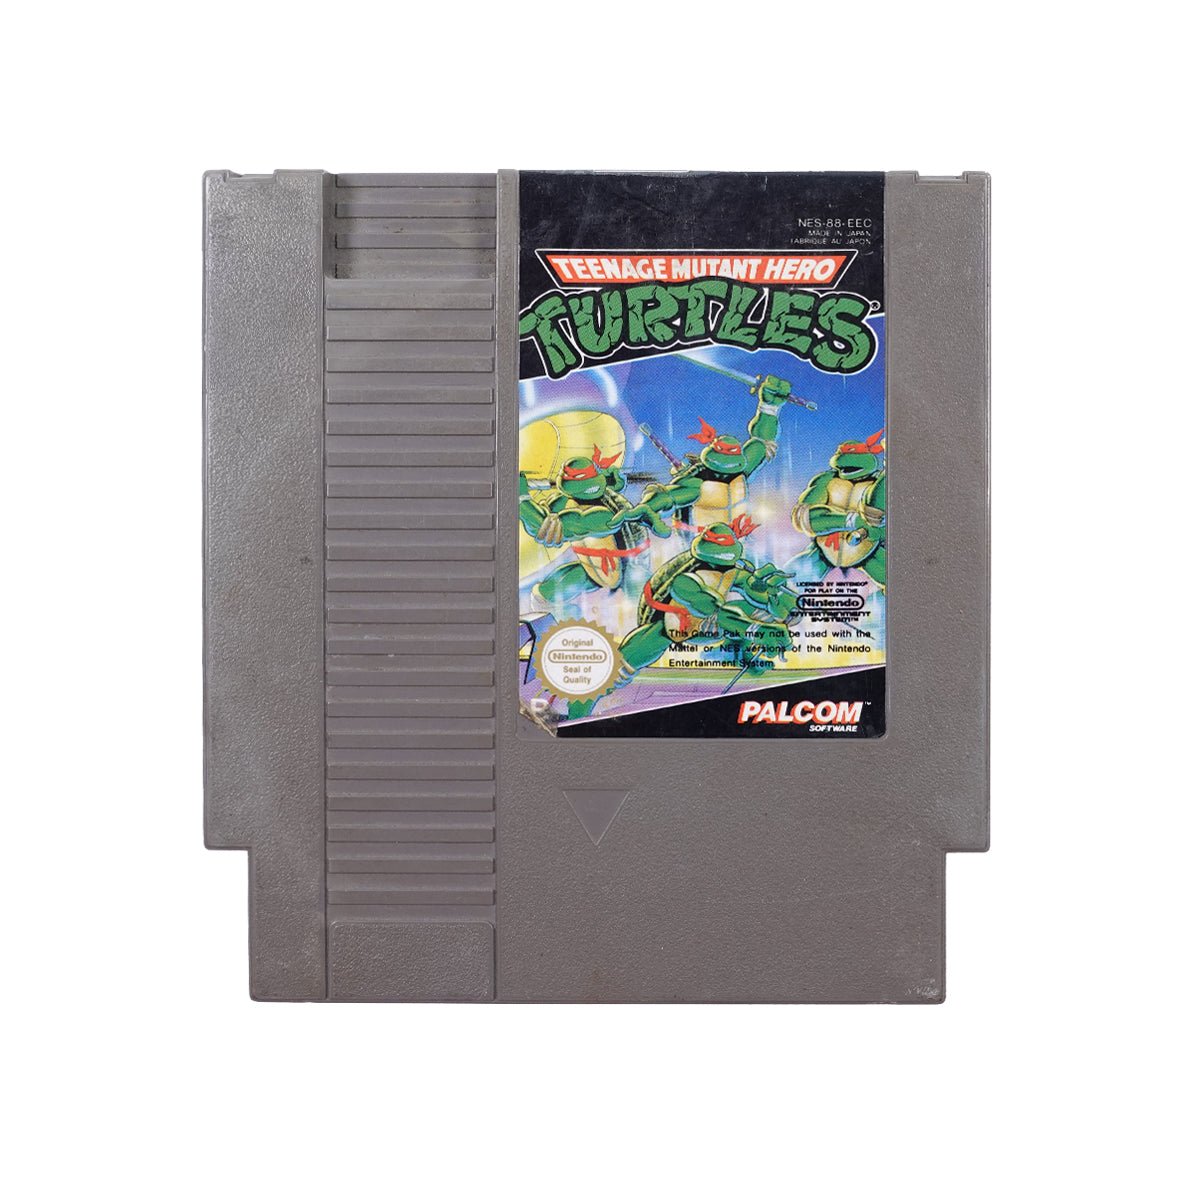 (Pre-Owned) Teenage Mutant Ninja Turtles - Nintendo NES - Store 974 | ستور ٩٧٤